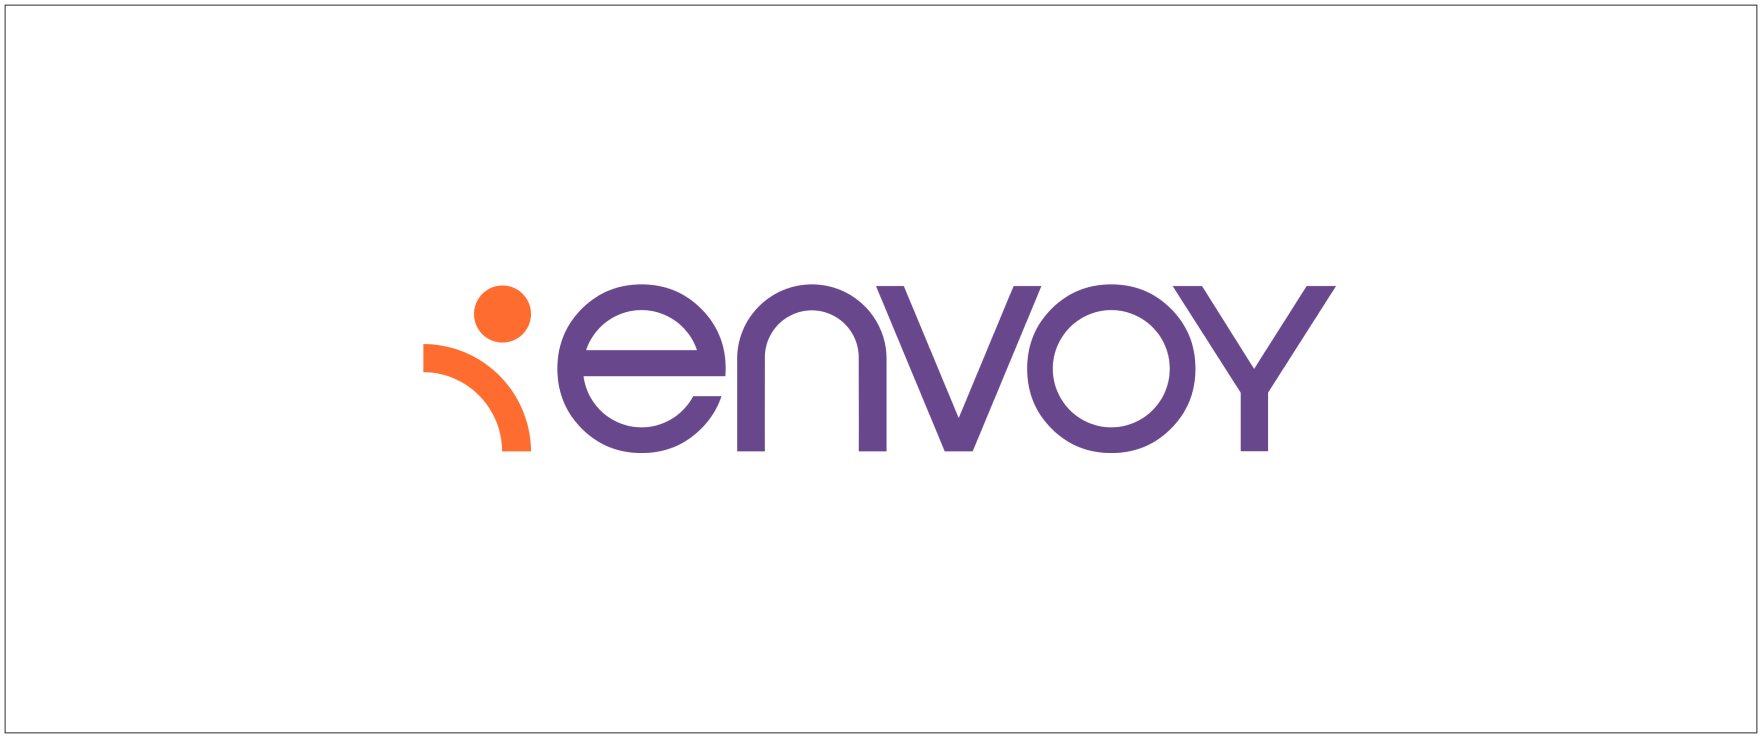 ENVOY logo